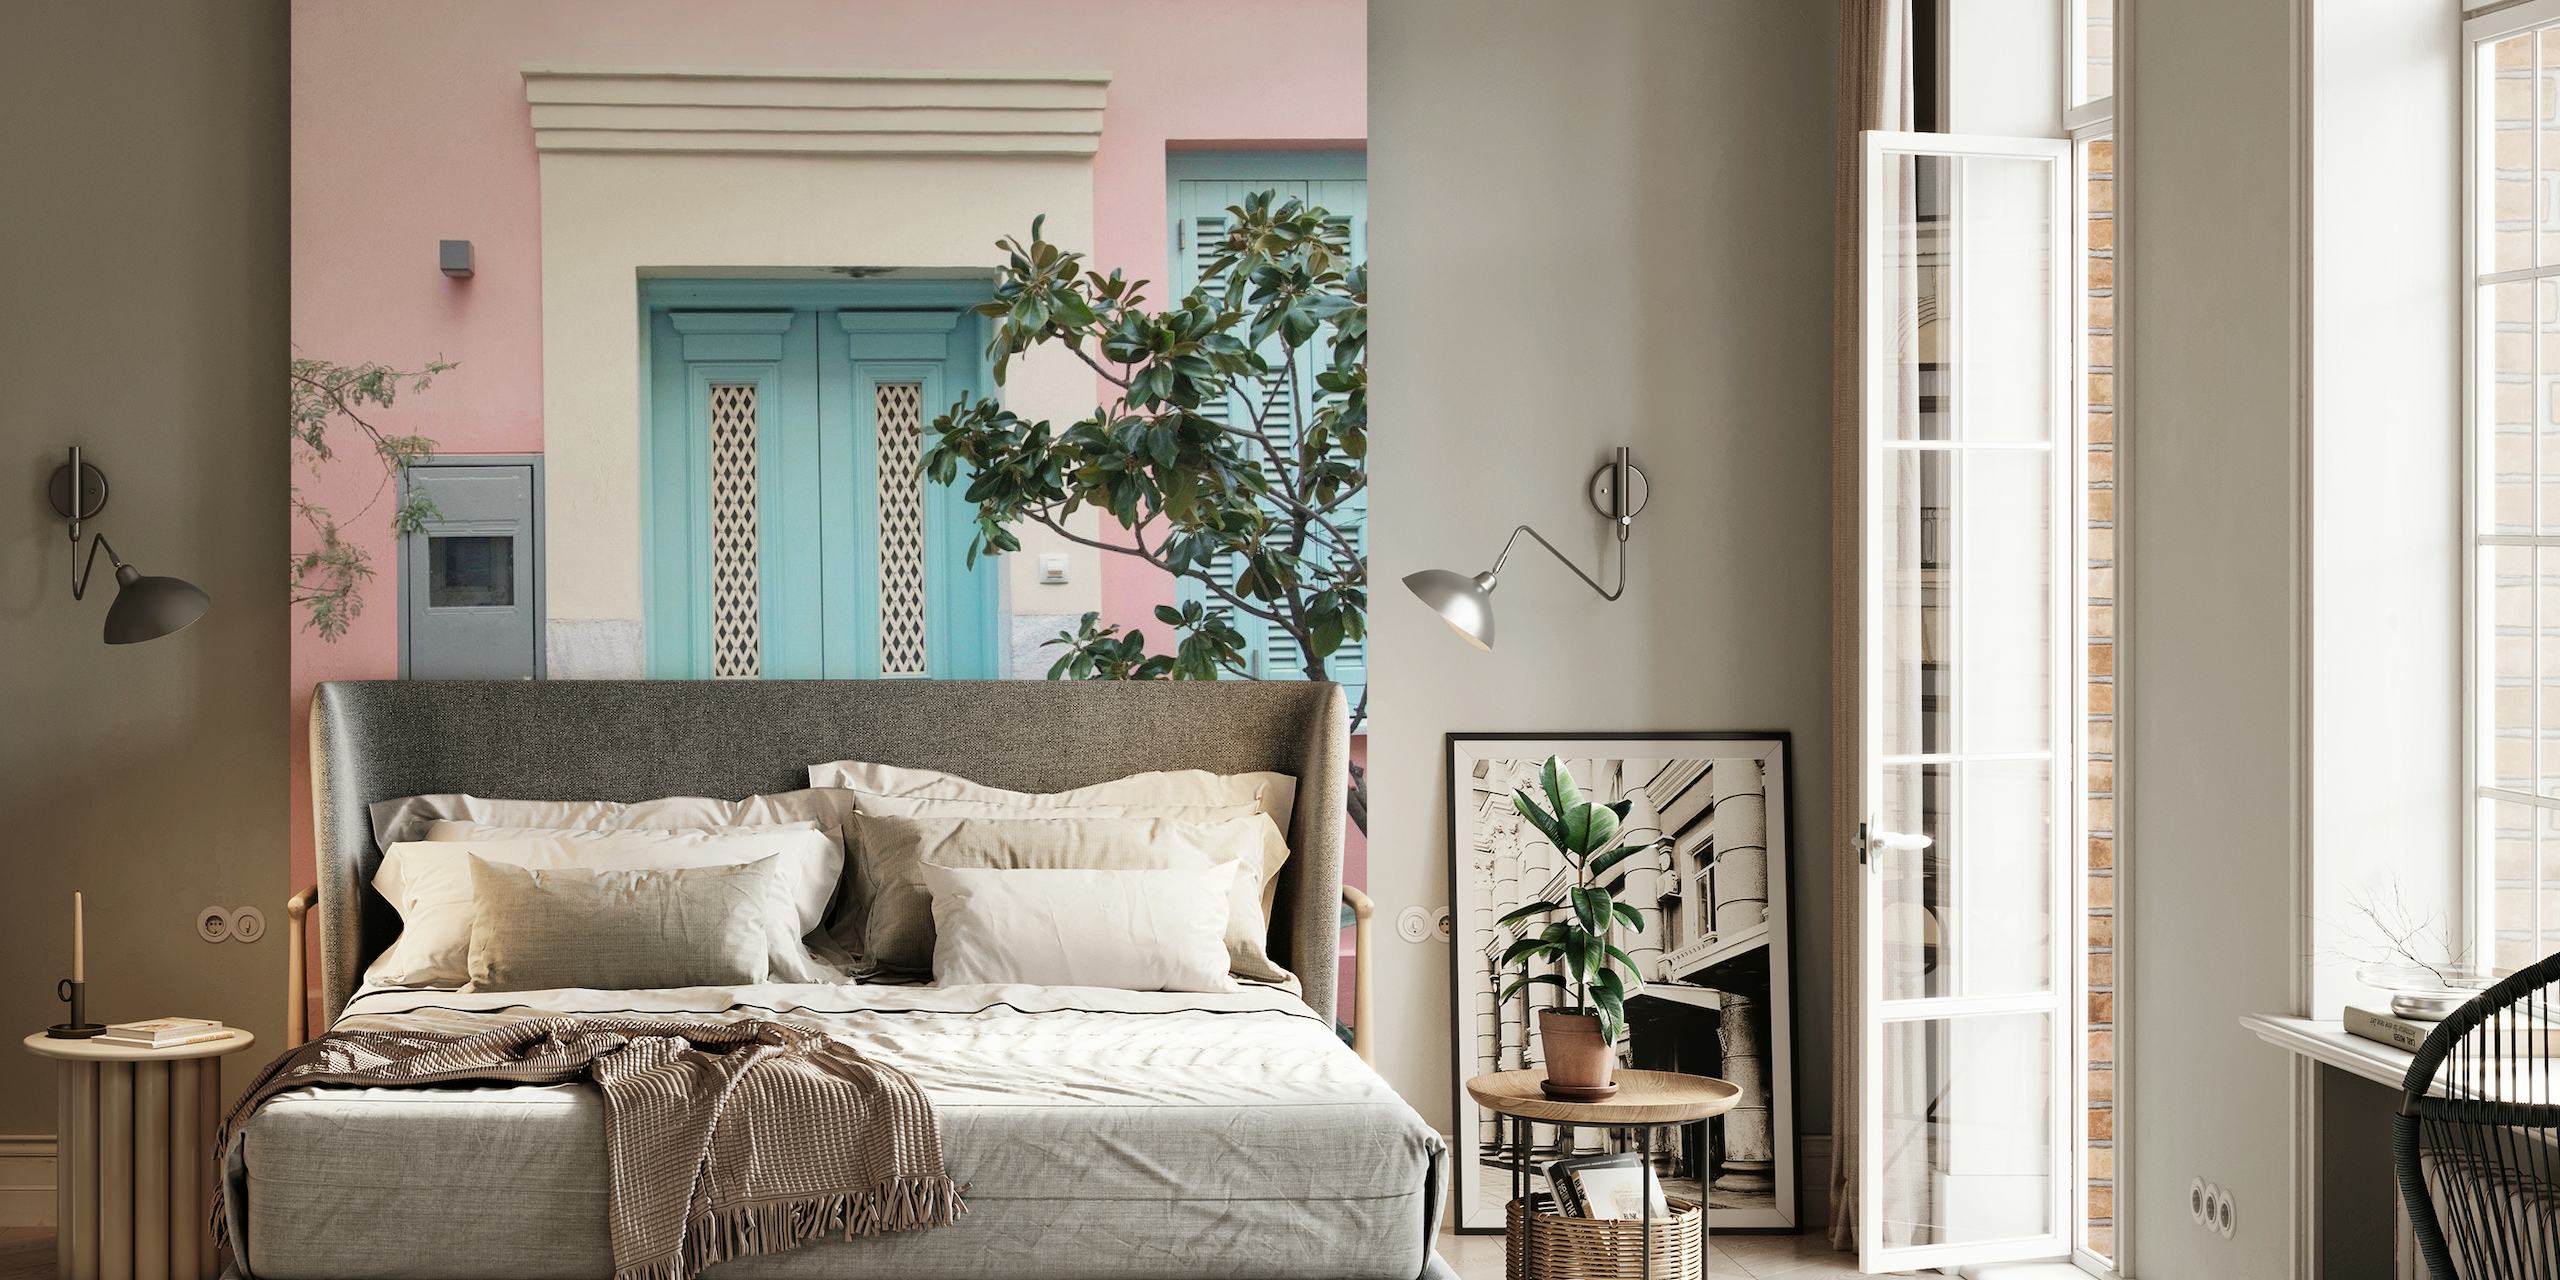 Pastelově růžová fasáda domu s modrými dveřmi v motivu Athén